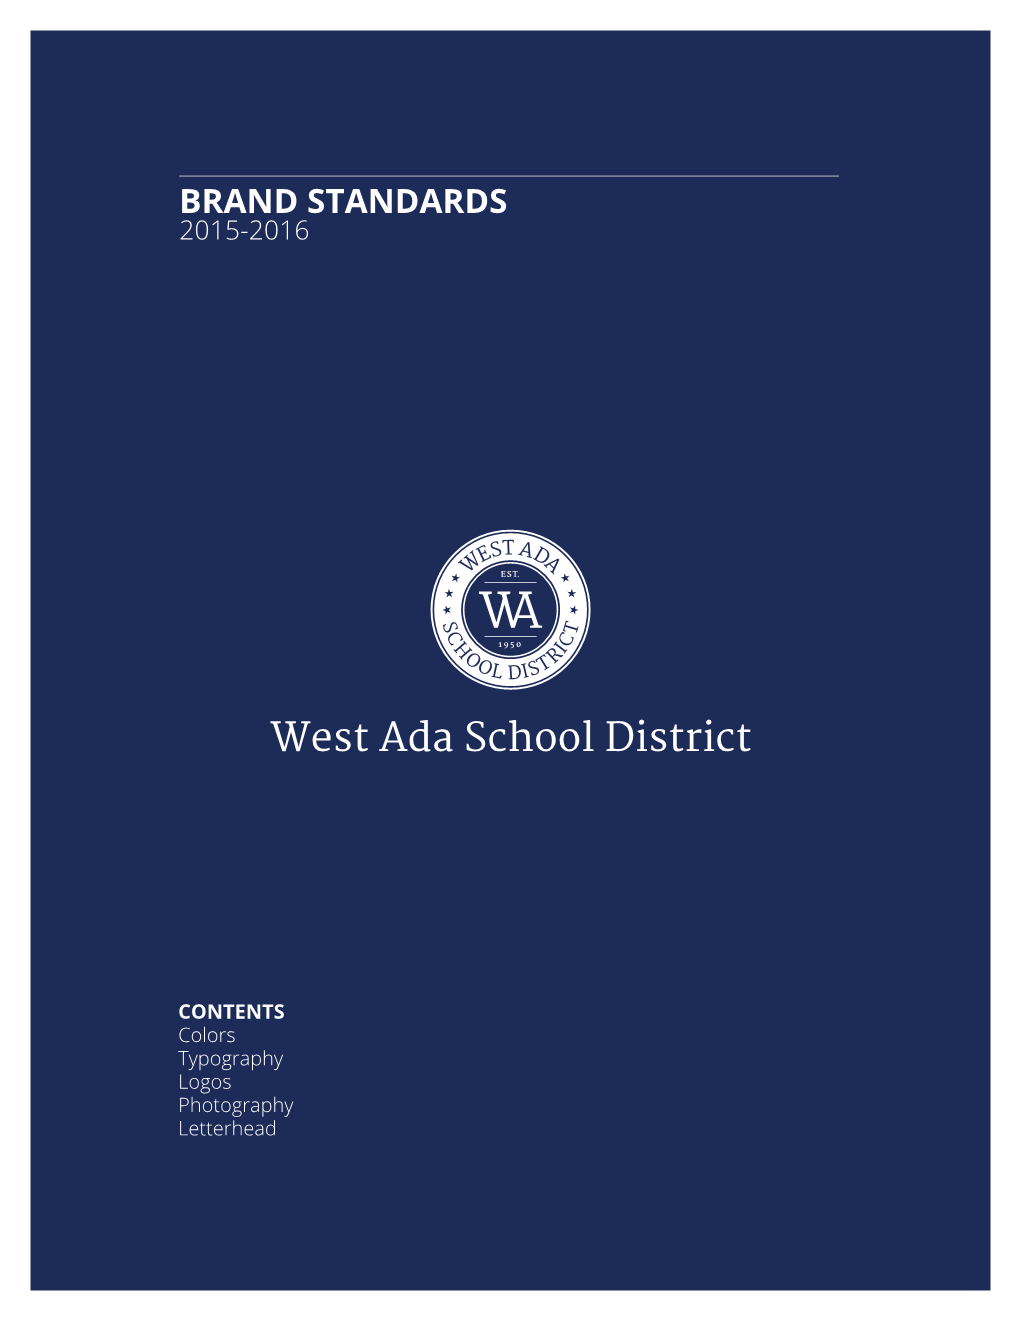 Westada Brandstandards Copy